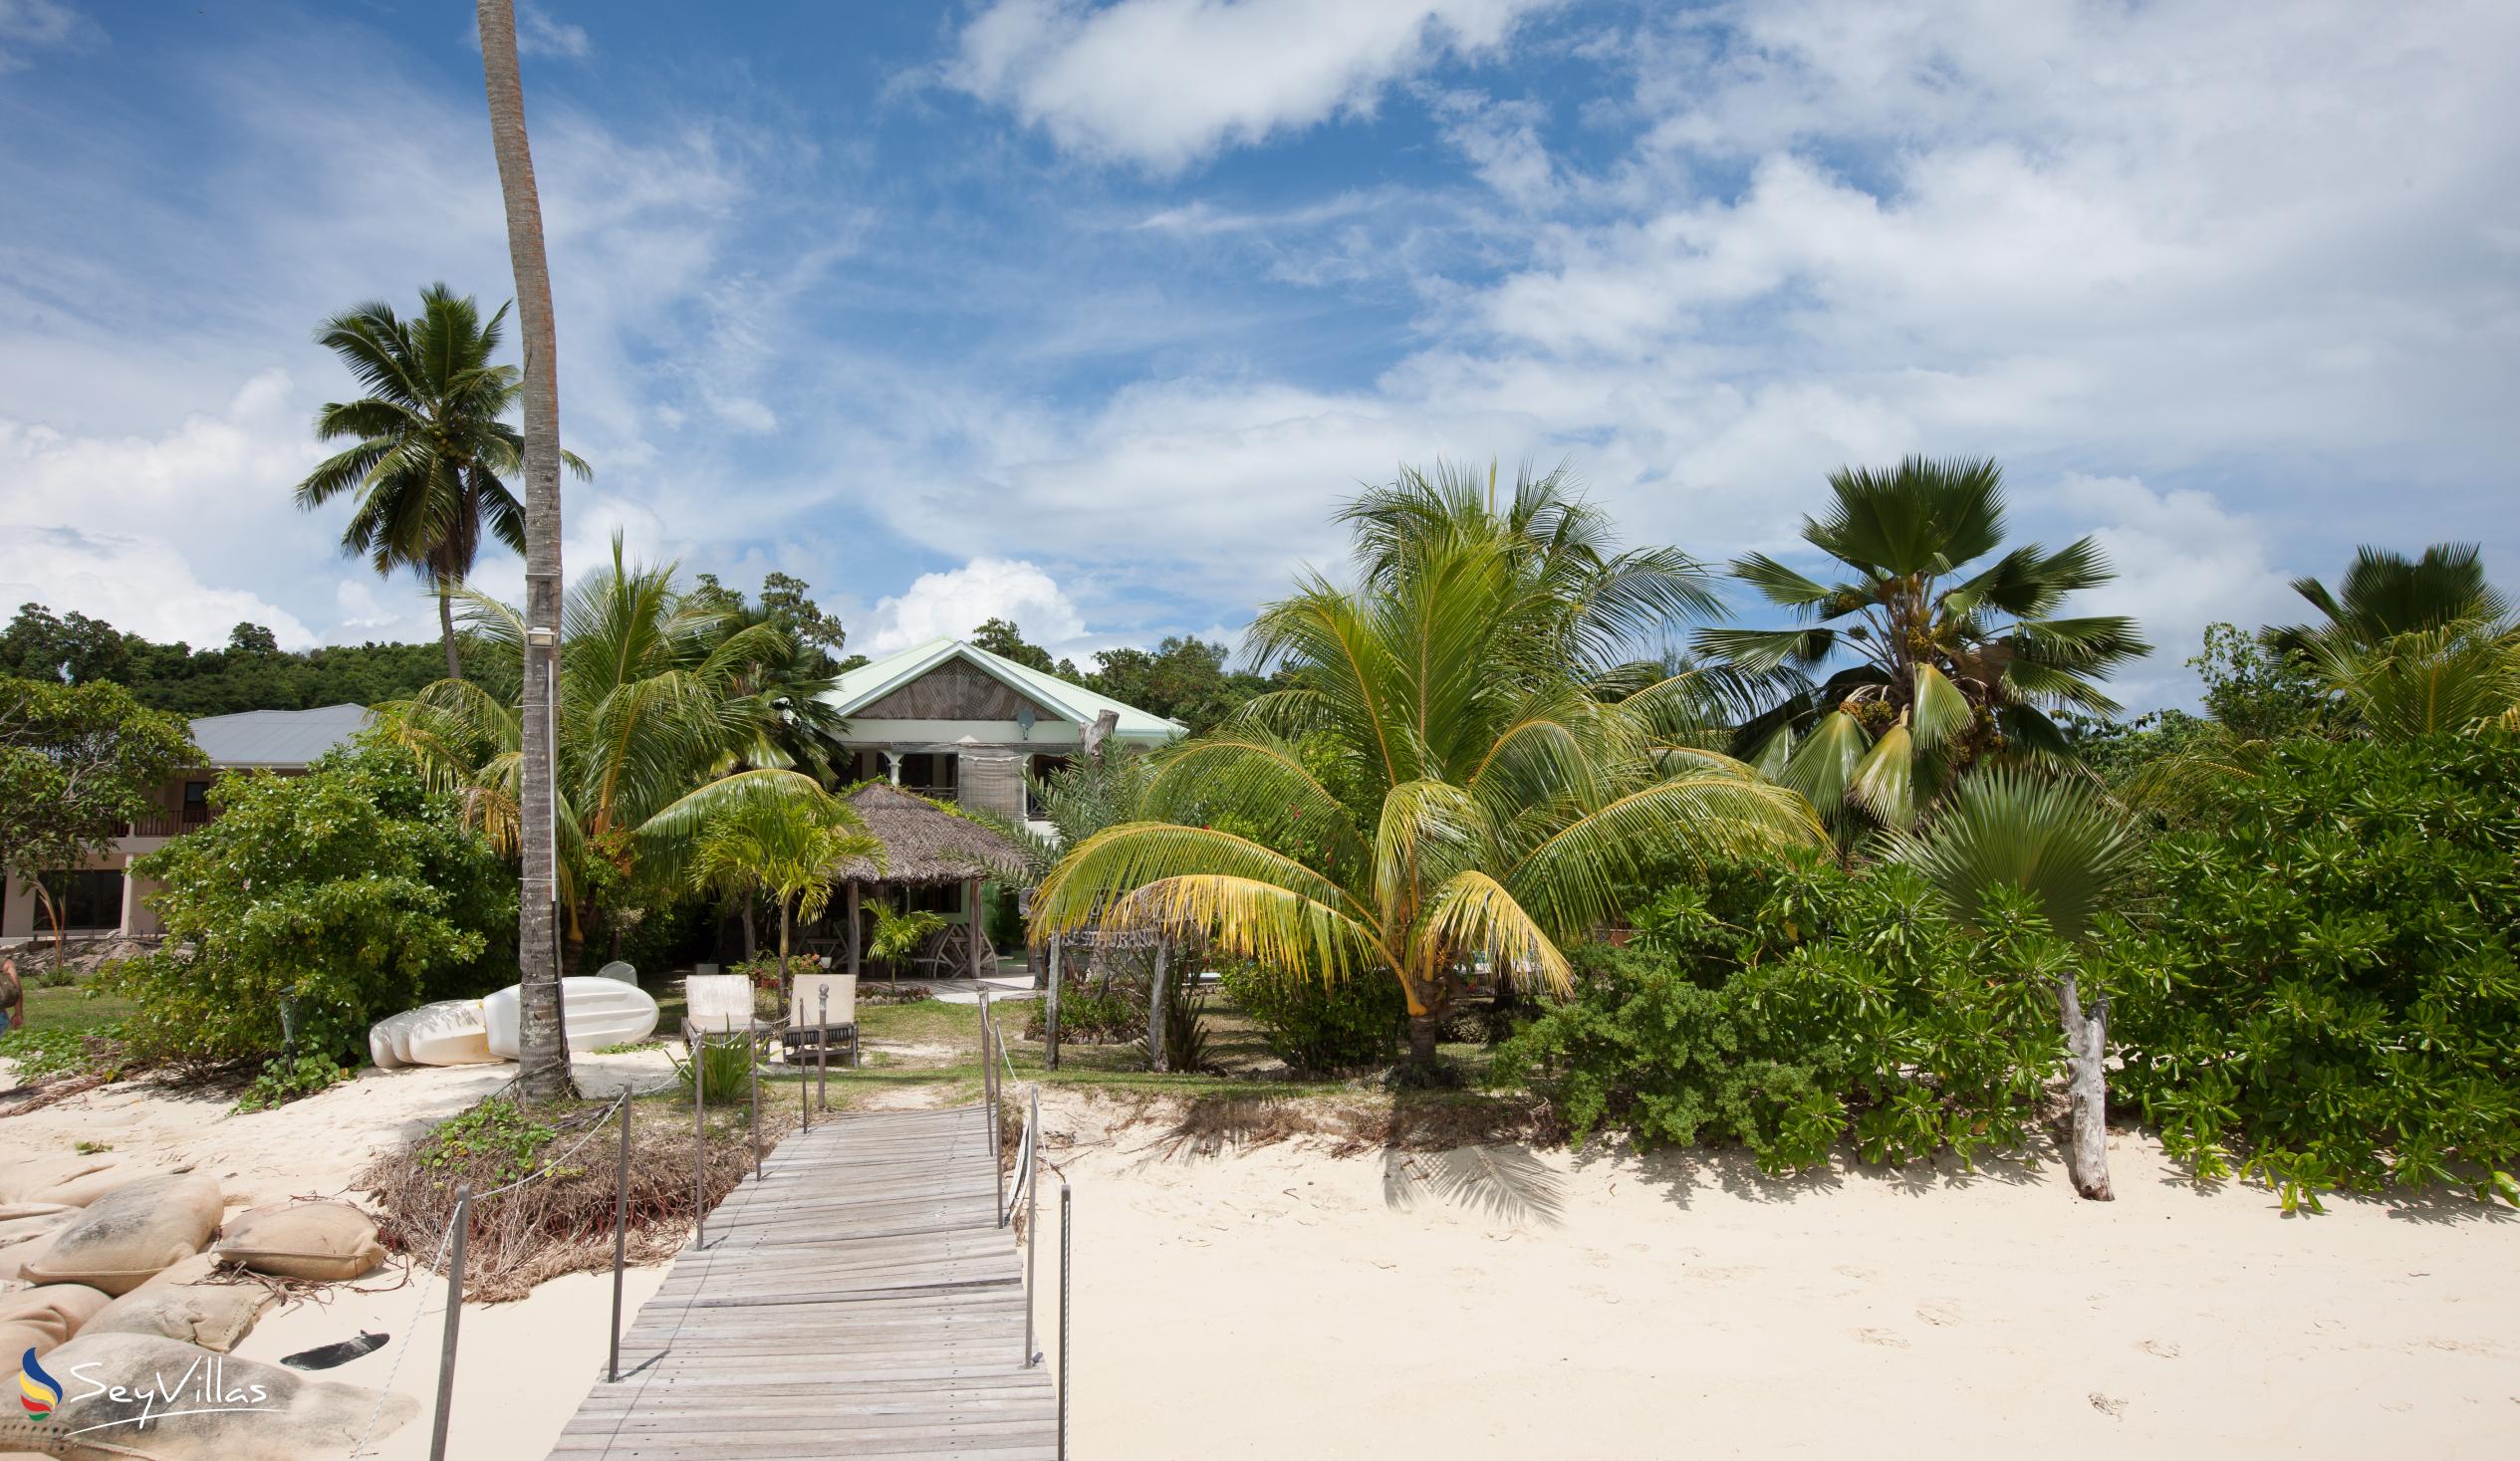 Foto 47: Villa de Cerf - Extérieur - Cerf Island (Seychelles)